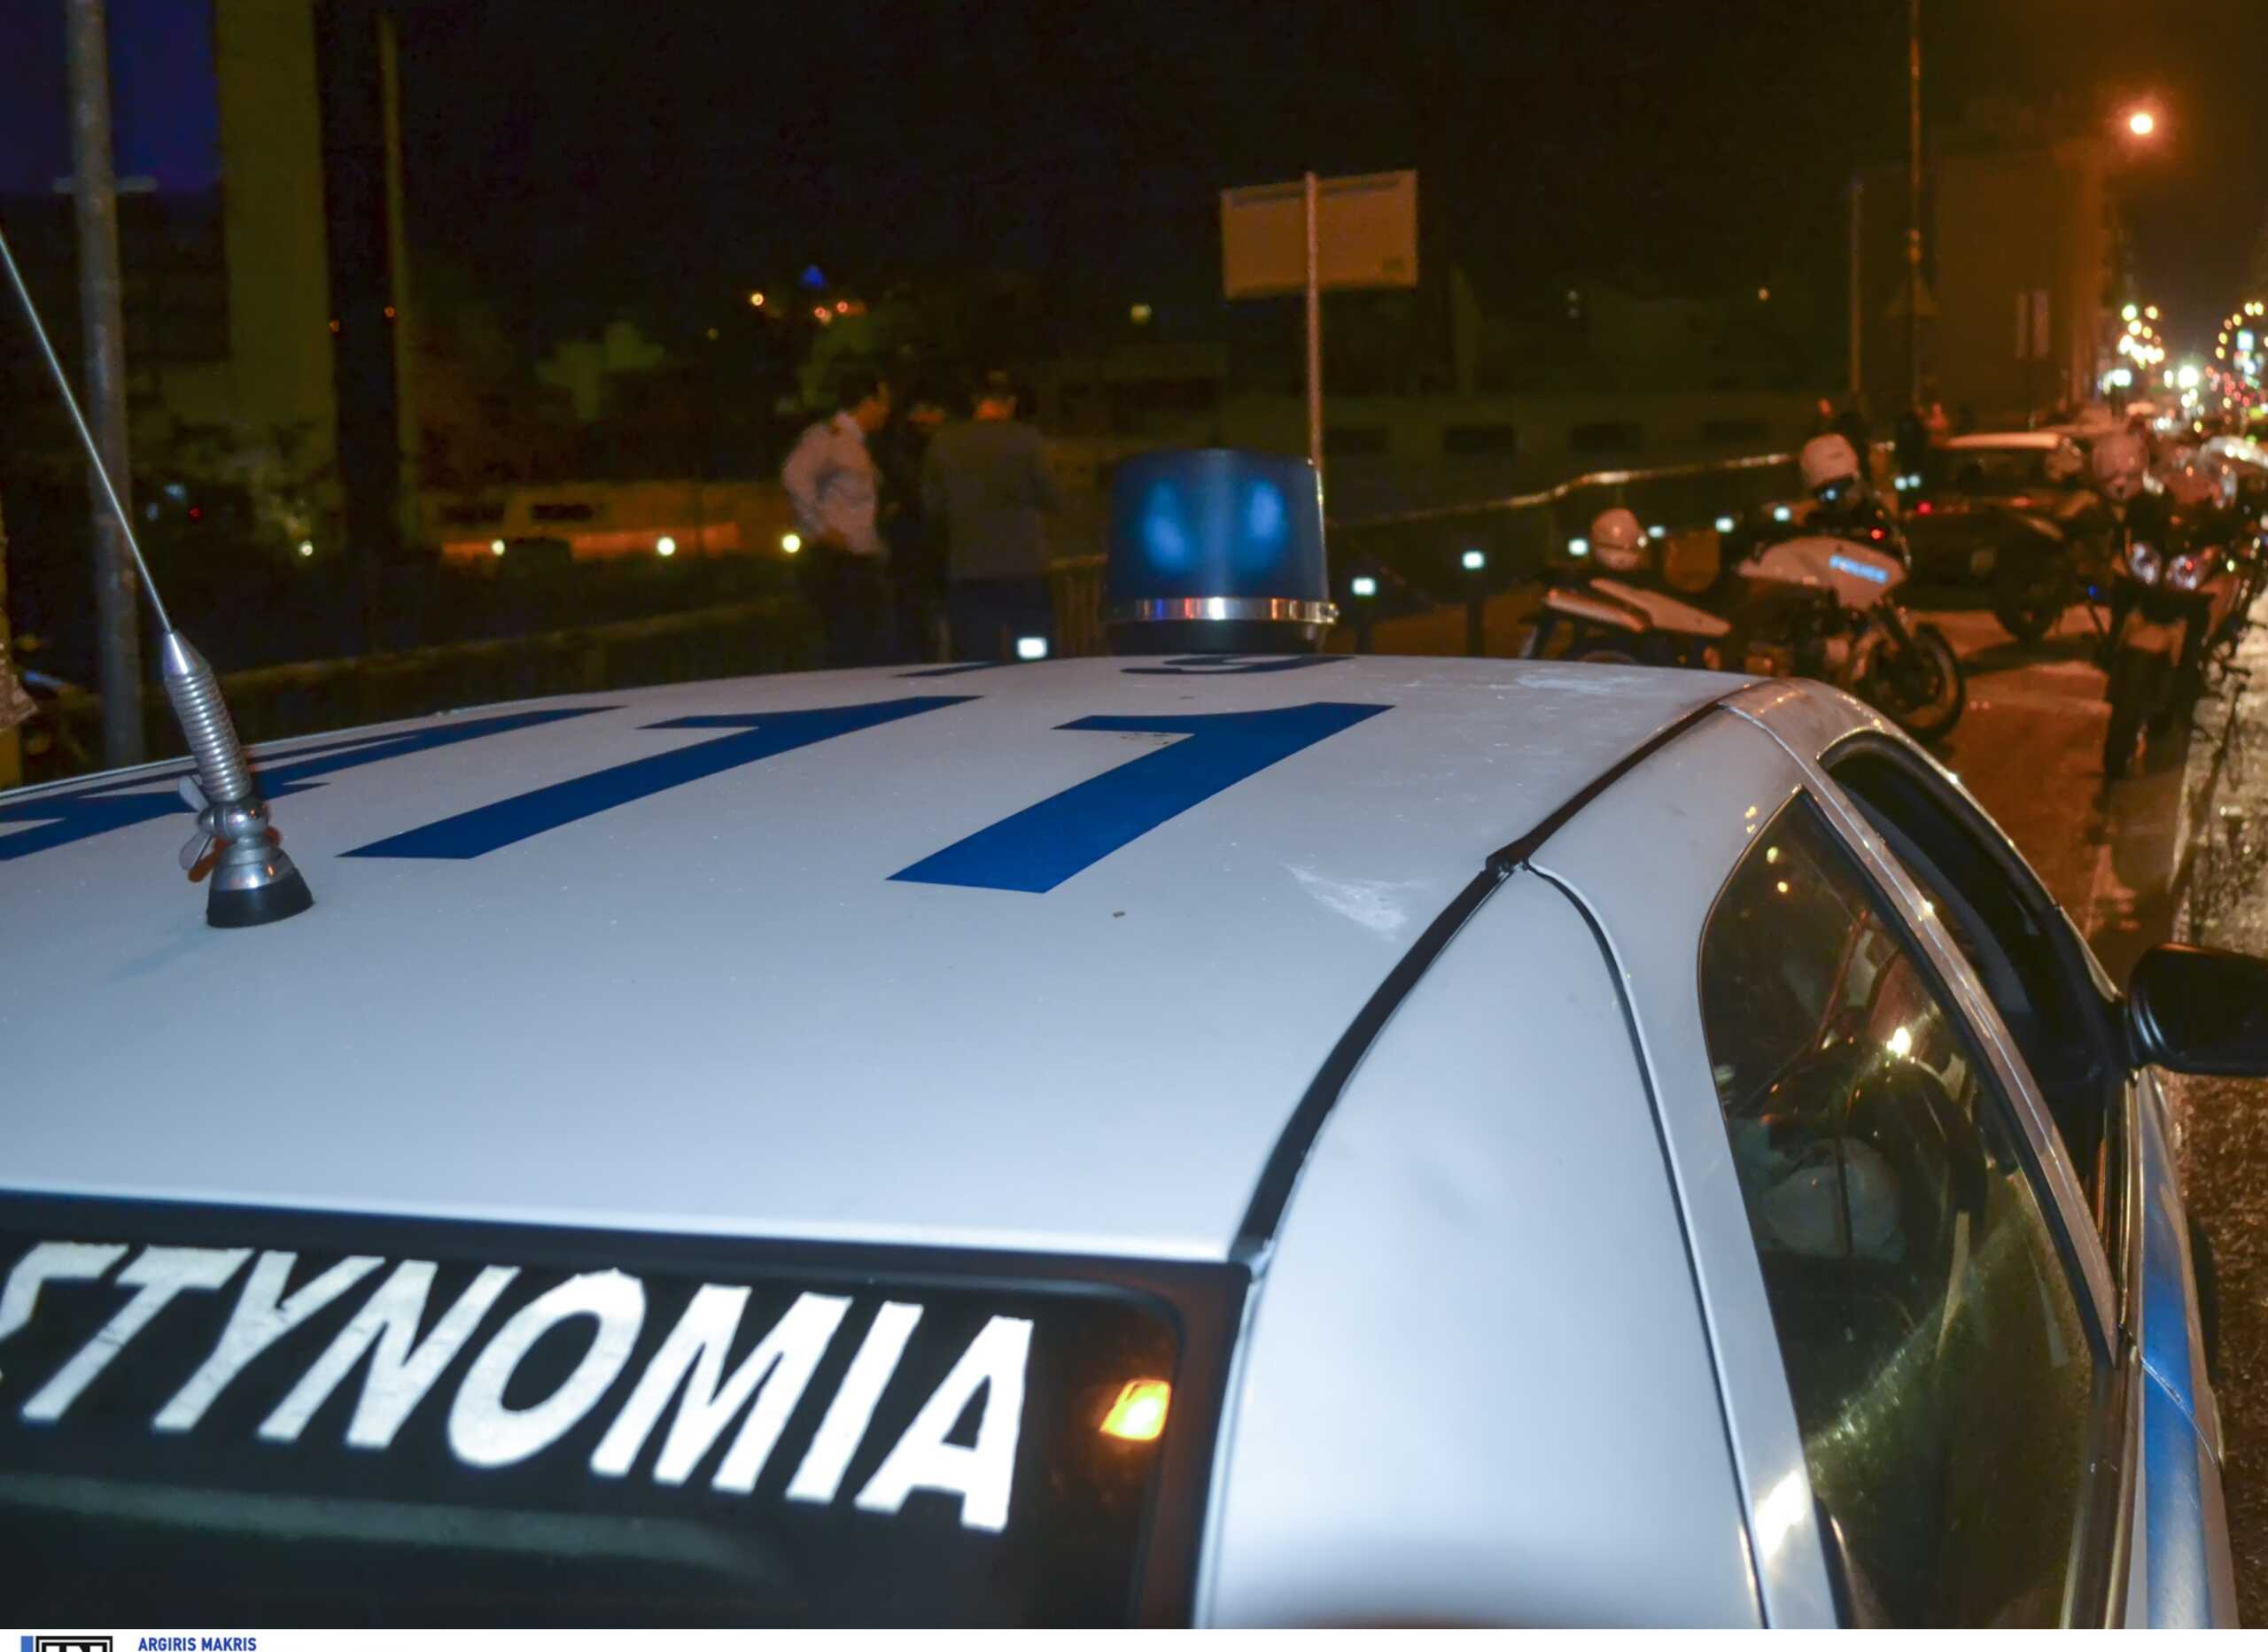 Θεσσαλονίκη: Τραυματίστηκε 6χρονο παιδί και μια 40χρονη γυναίκα από πυροβολισμούς σε άγριο επεισόδιο